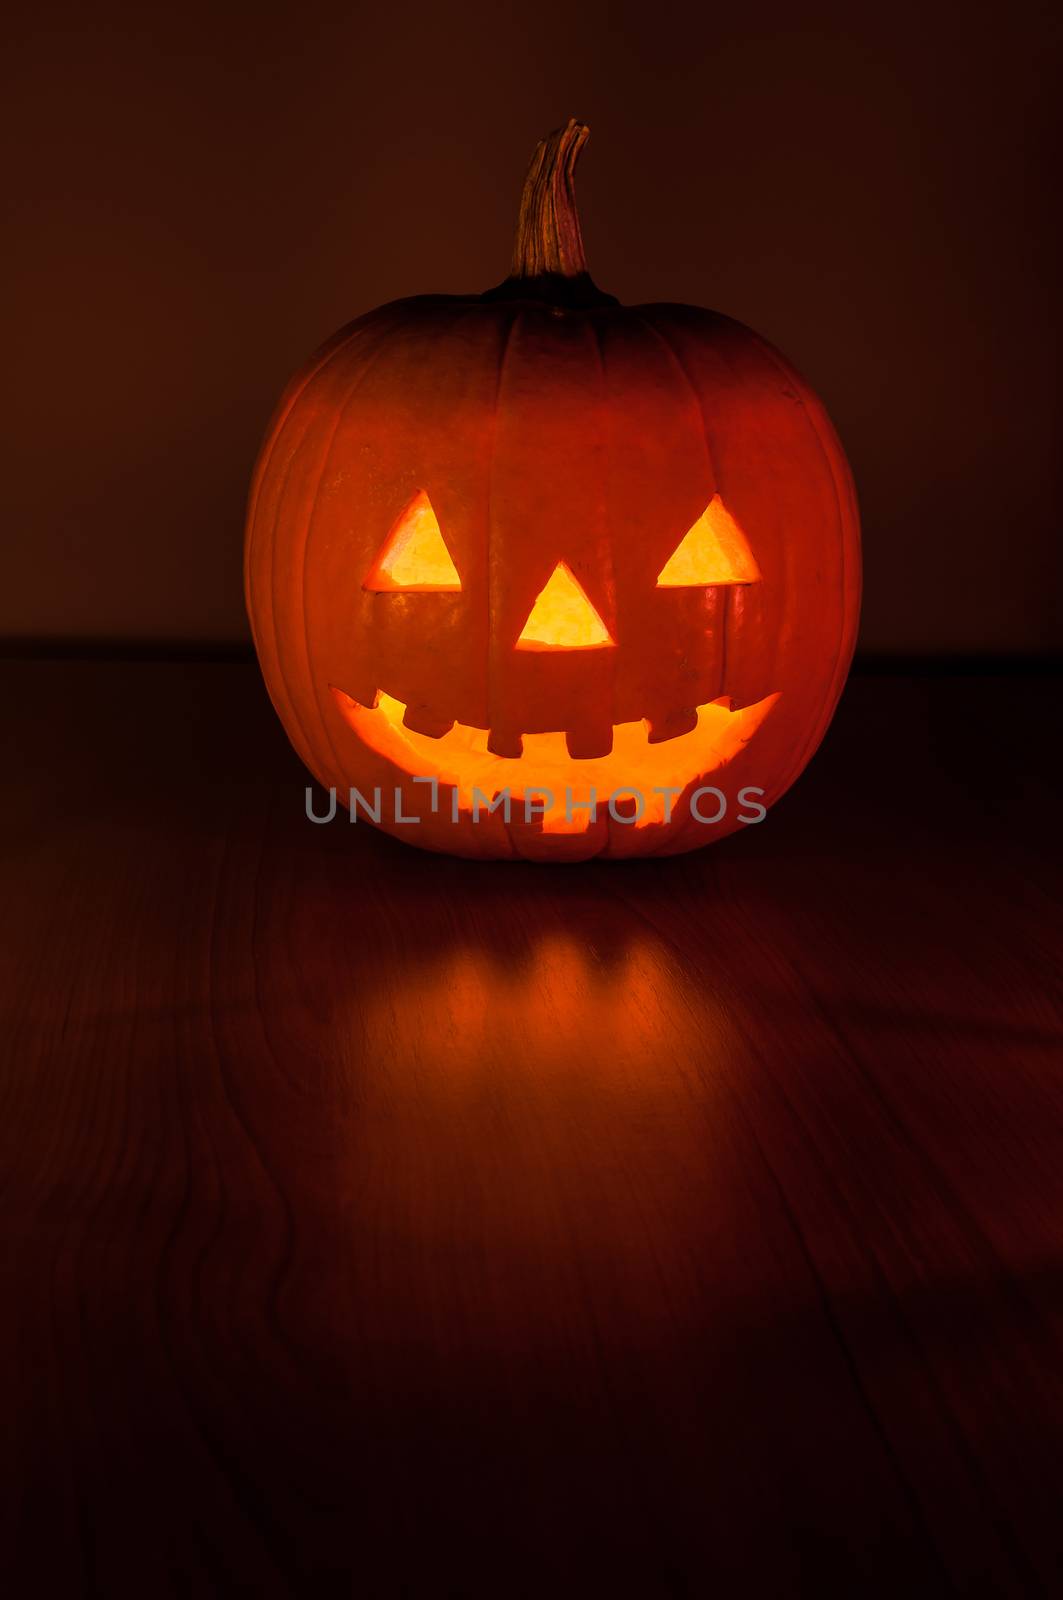 Halloween pumpkin glowing in the dark by mkos83